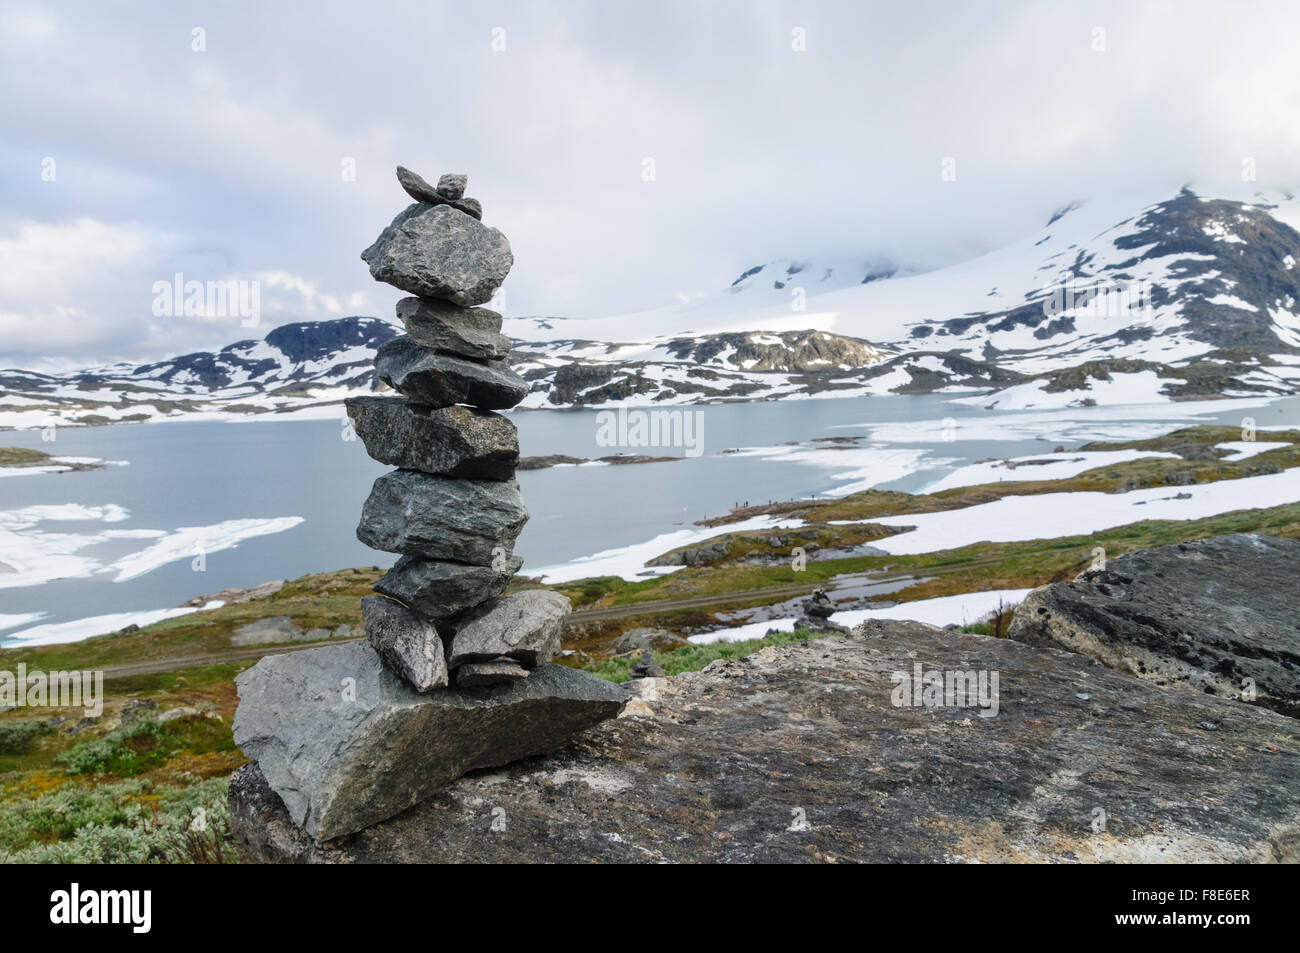 Pila de equilibrado de piedras contra el fondo borroso de higland lago y montañas nevadas Foto de stock